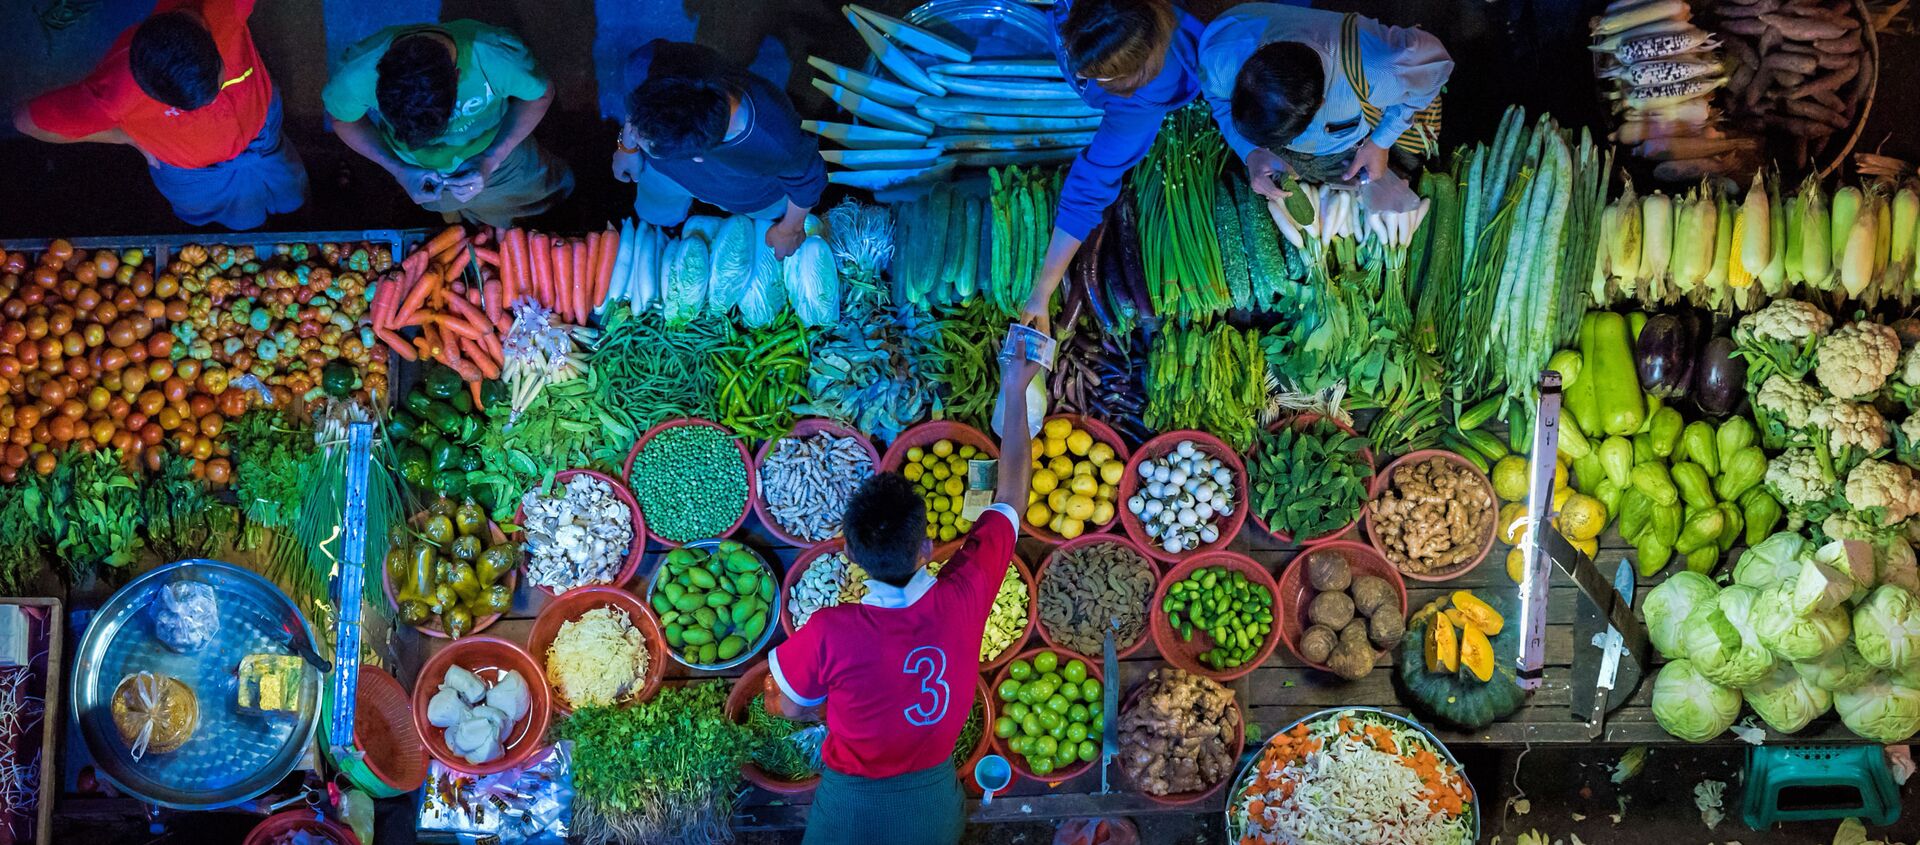 الصورة بعنوان كشك الخضار، للمصور زاي يار لين من ميانمار، الفائز في فئة شركة الأطعمة وينتربوتهام داربي للبيع من مسابقة Pink Lady® لأفضل مصور الطعام لعام 2020 - سبوتنيك عربي, 1920, 01.11.2021